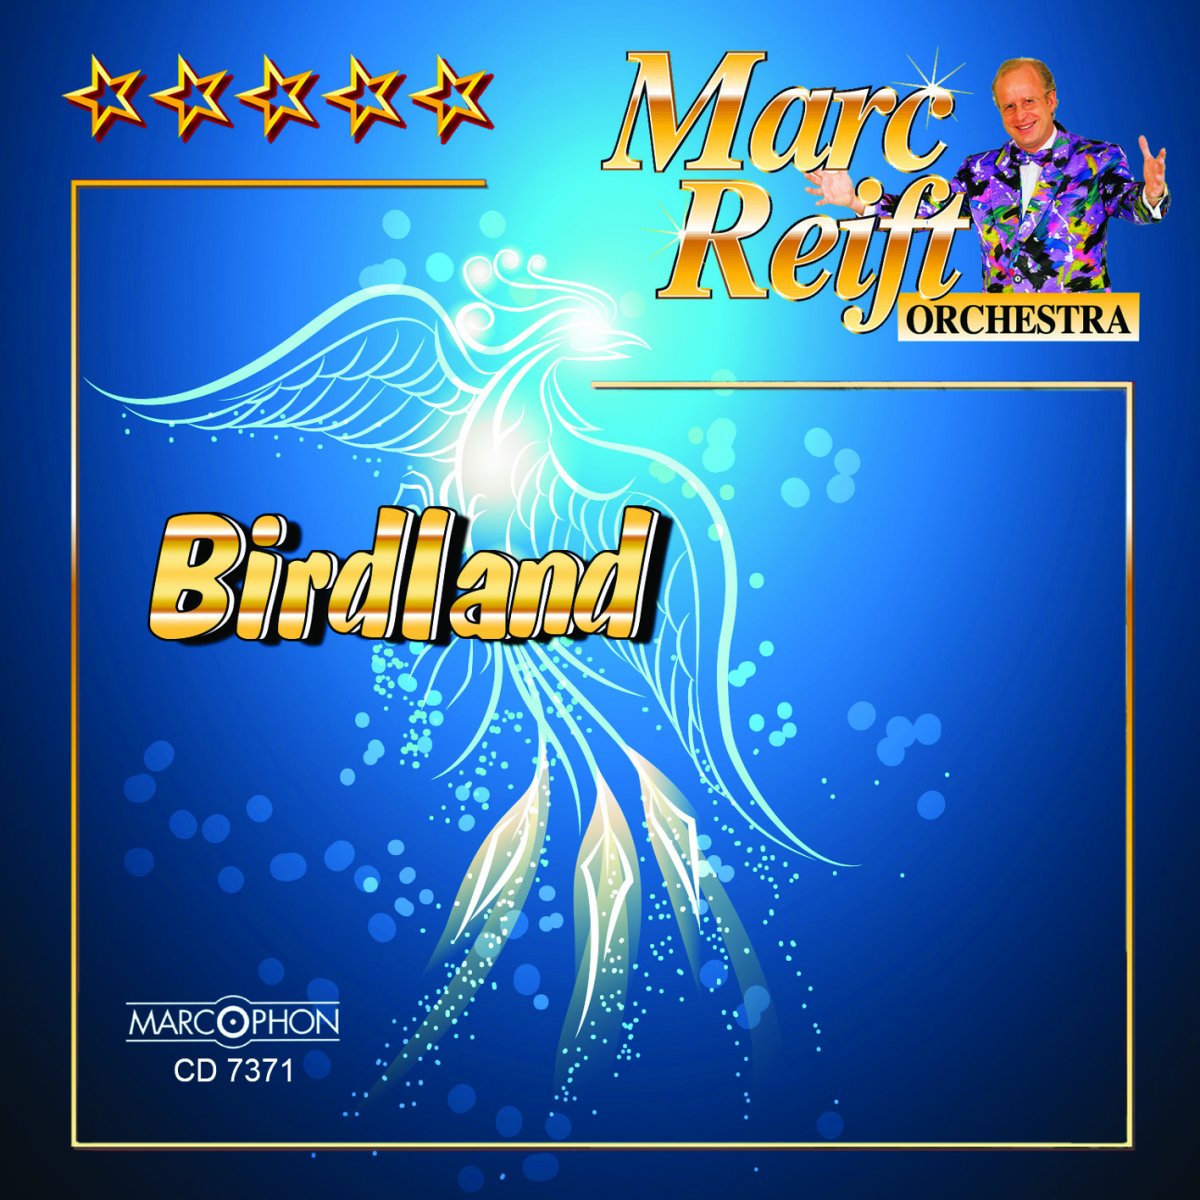 Birdland - click here